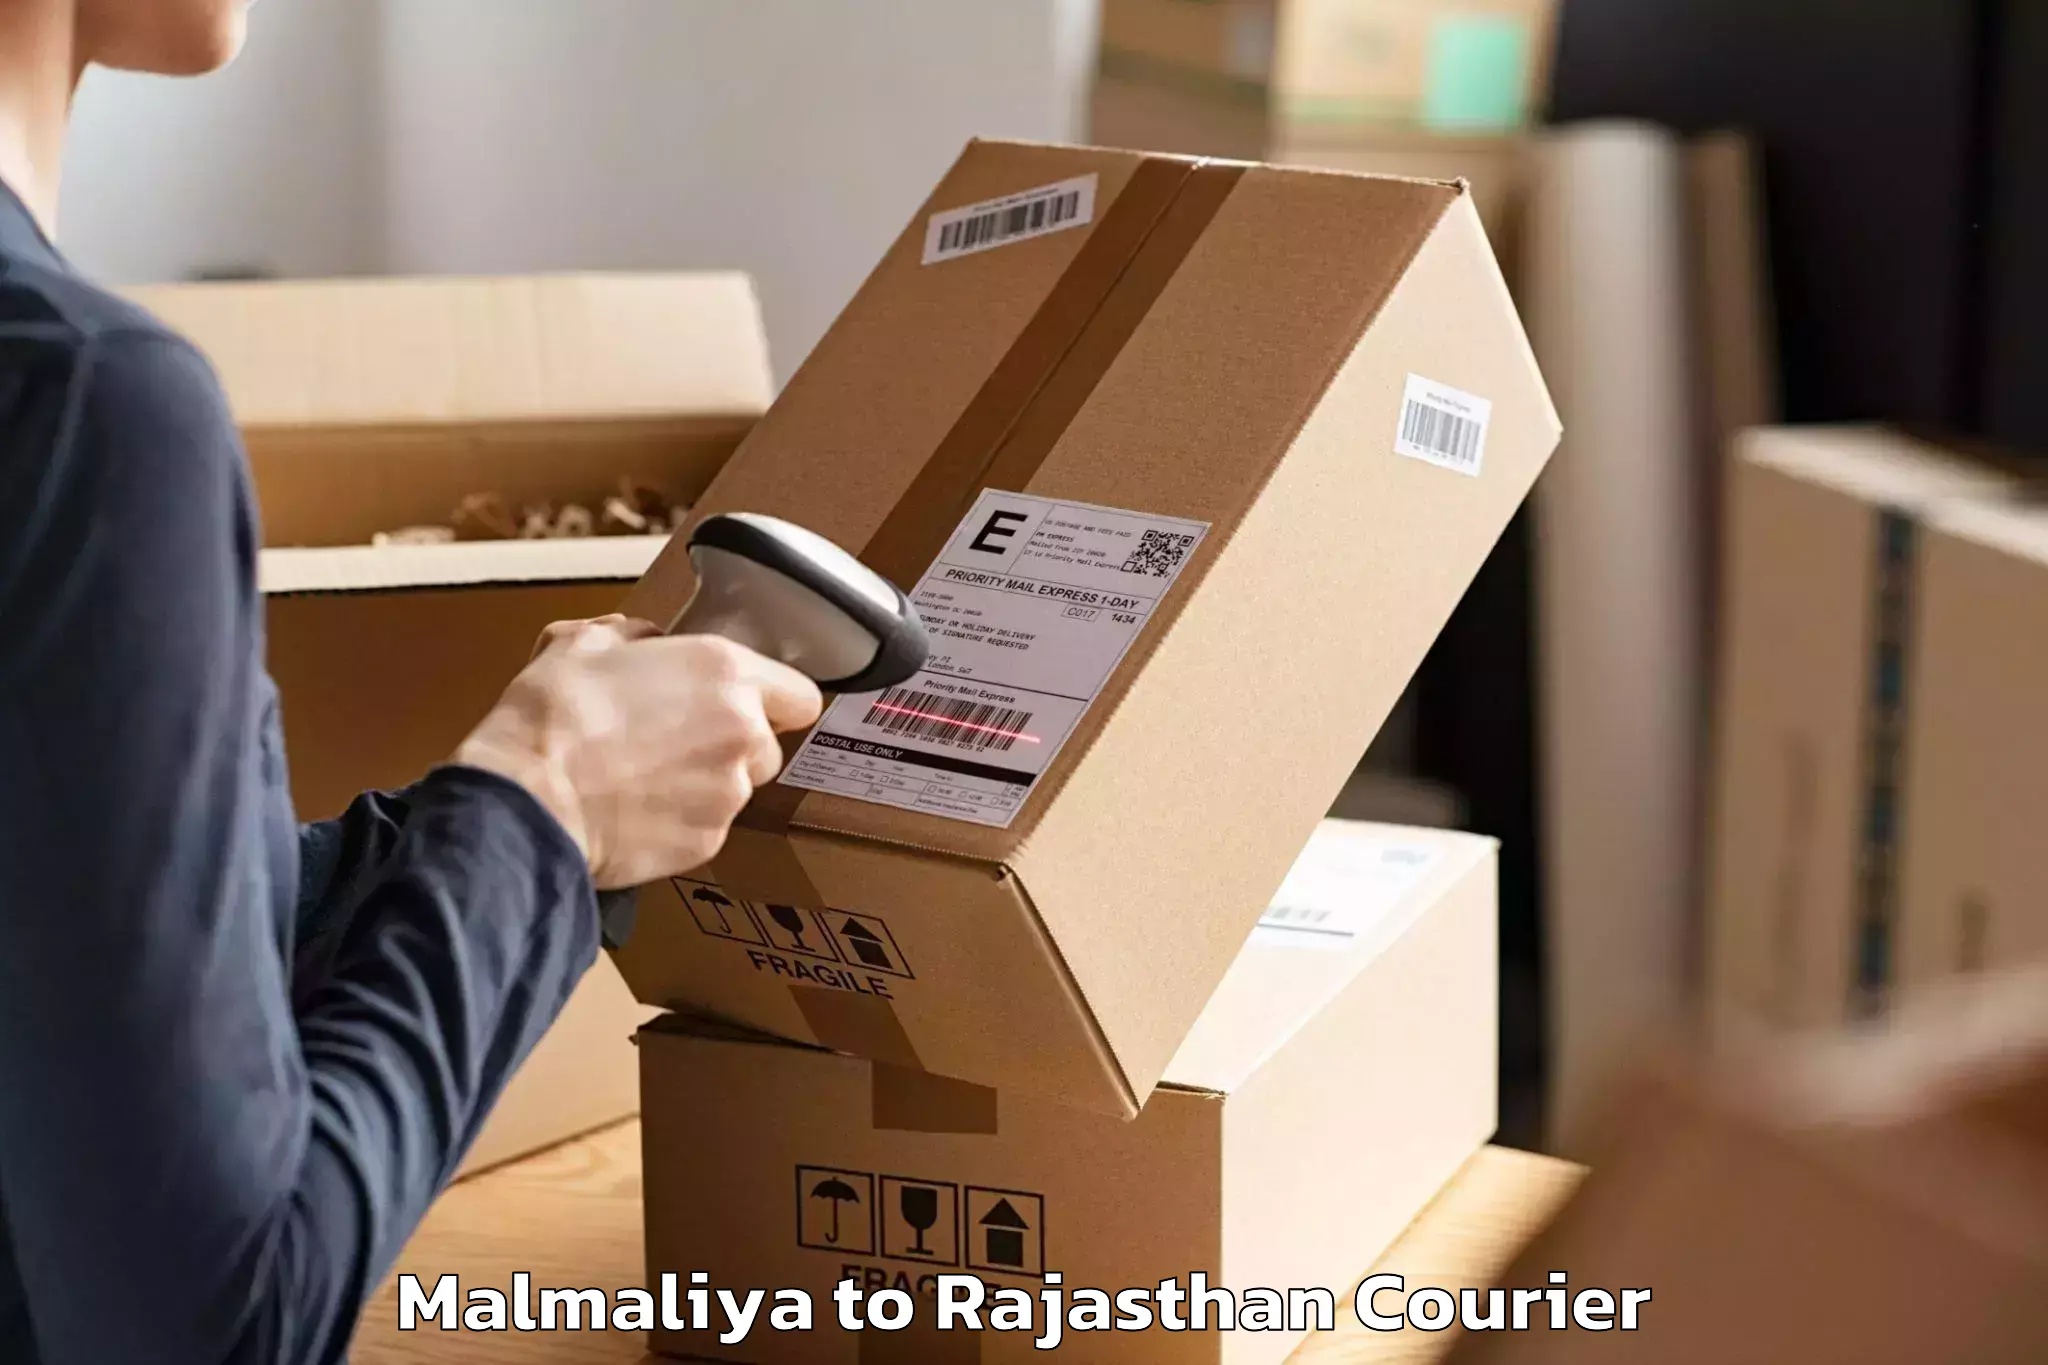 Efficient moving company Malmaliya to Rajasthan